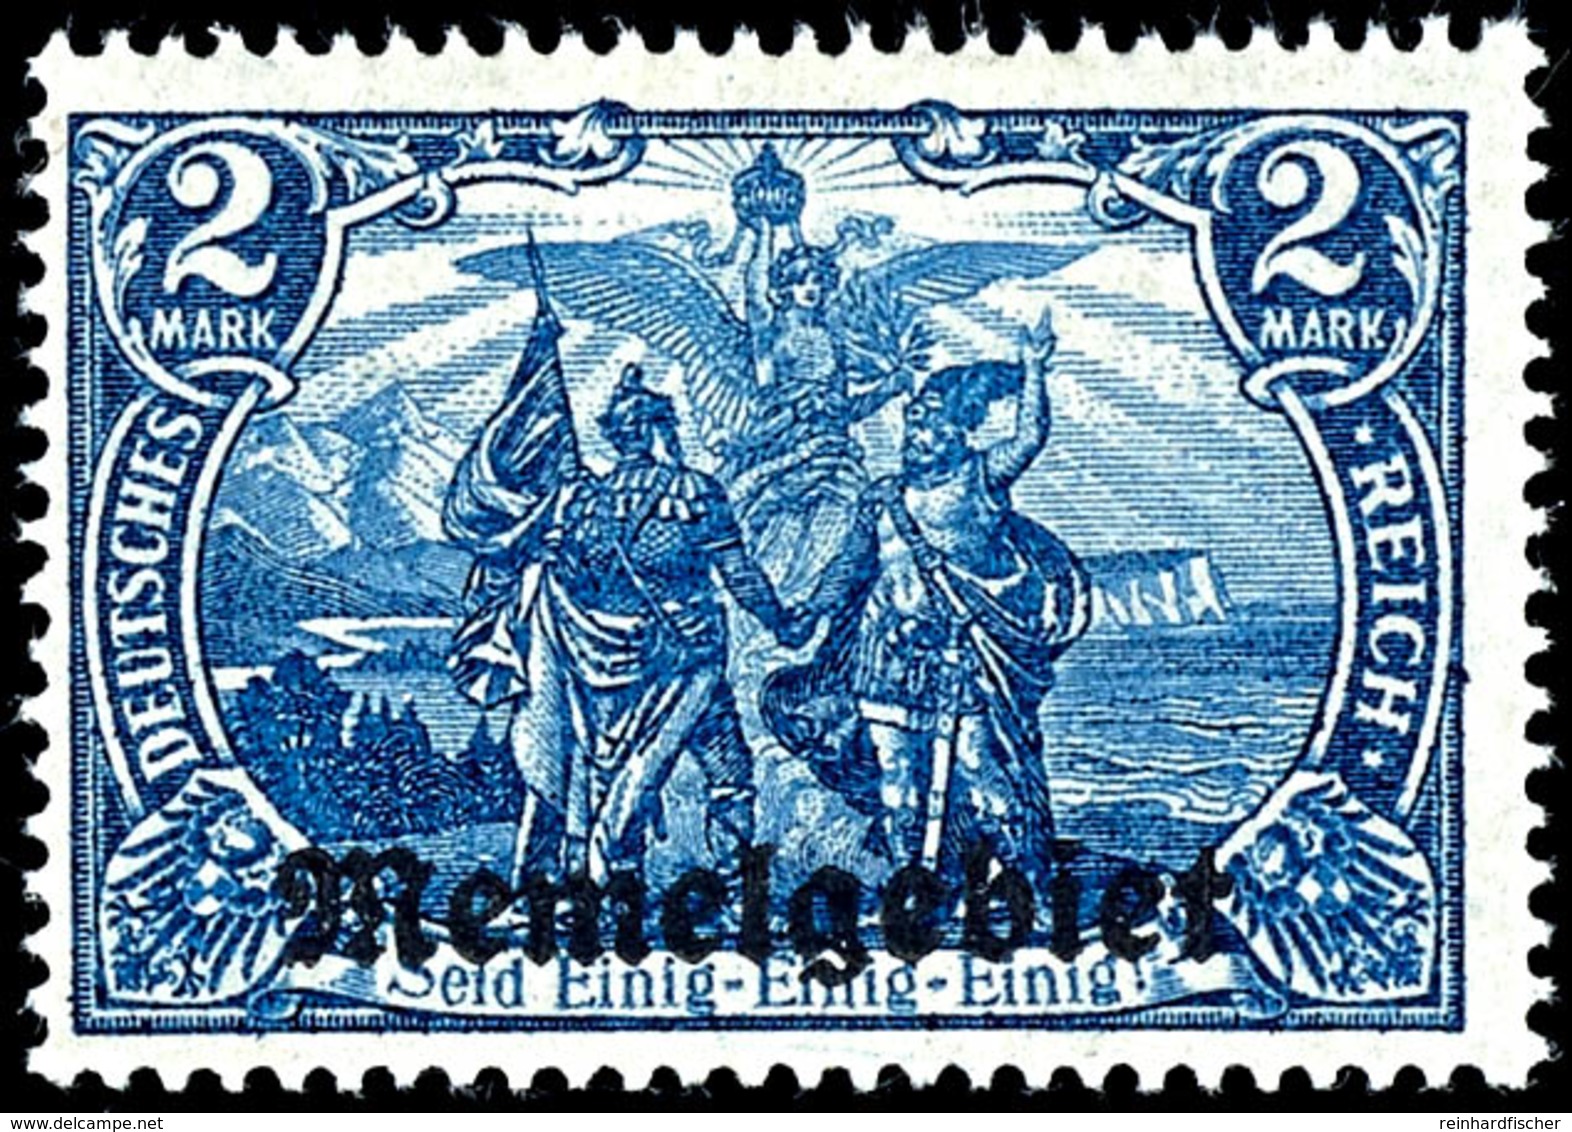 2 Mark Deutsches Reich Mit Aufdruck "Memelgebiet", Schwärzlichblau,  Tadellos Ungebraucht Mit Originalgummierung, Fotobe - Memel (Klaipeda) 1923